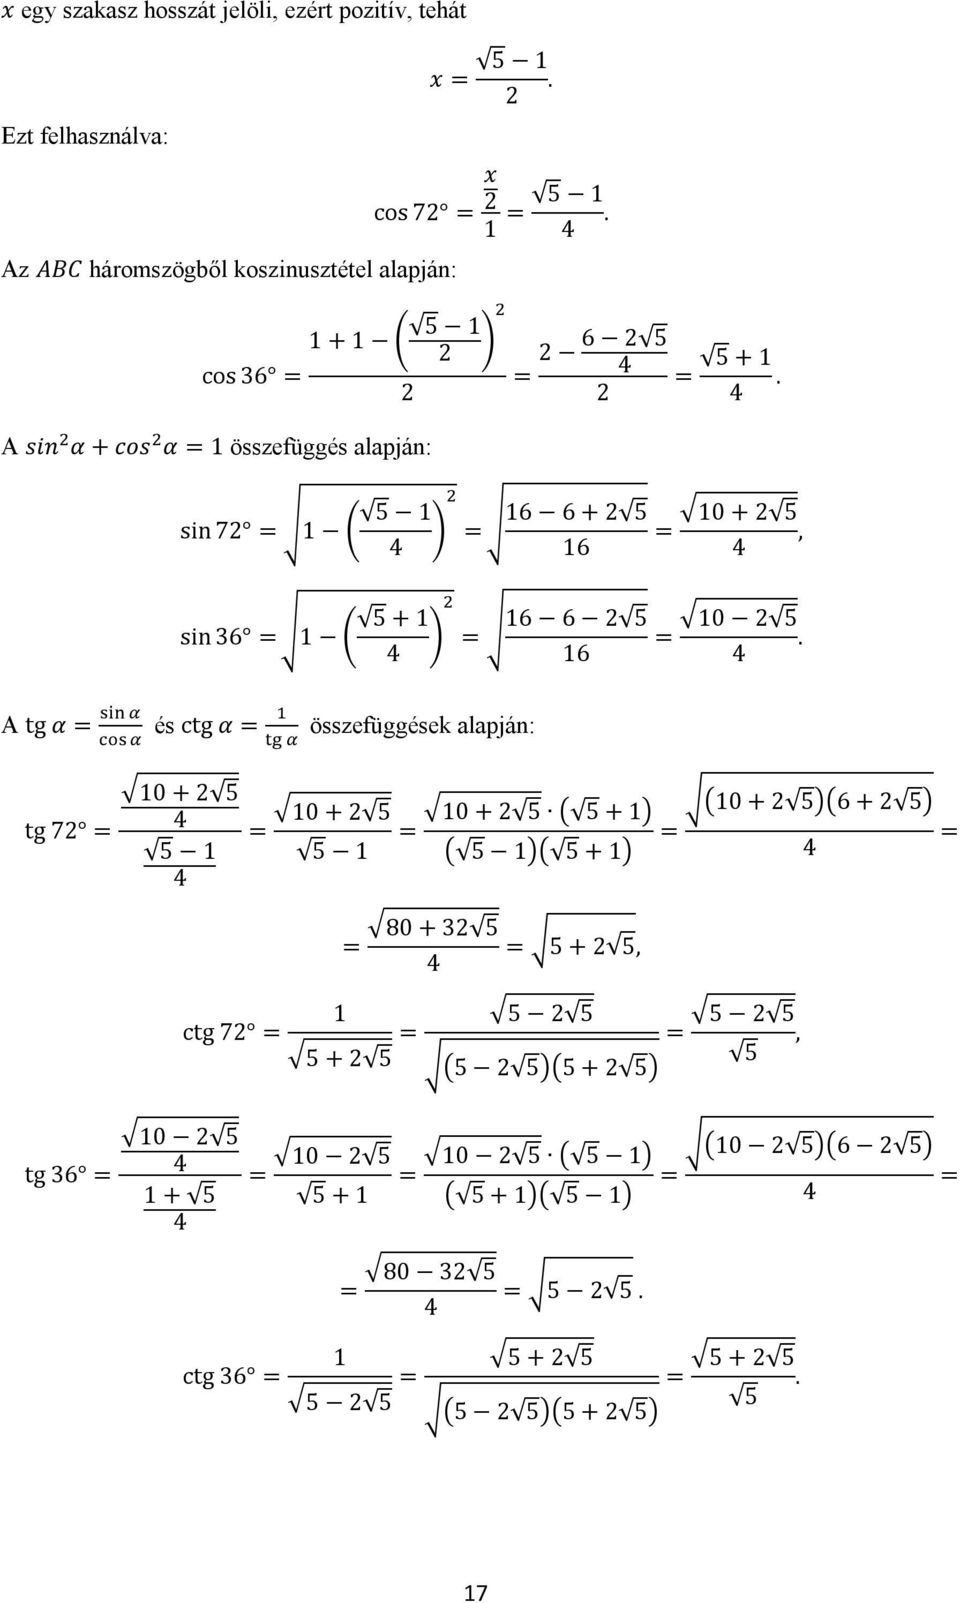 1 + 1 5 1 A sin α + cos α 1 összefüggés alapján: A tg α 6 5 sin 7 1 5 1 6 + 5 16 16 sin 36 1 5 + 1 6 5 16 16 és ctg α